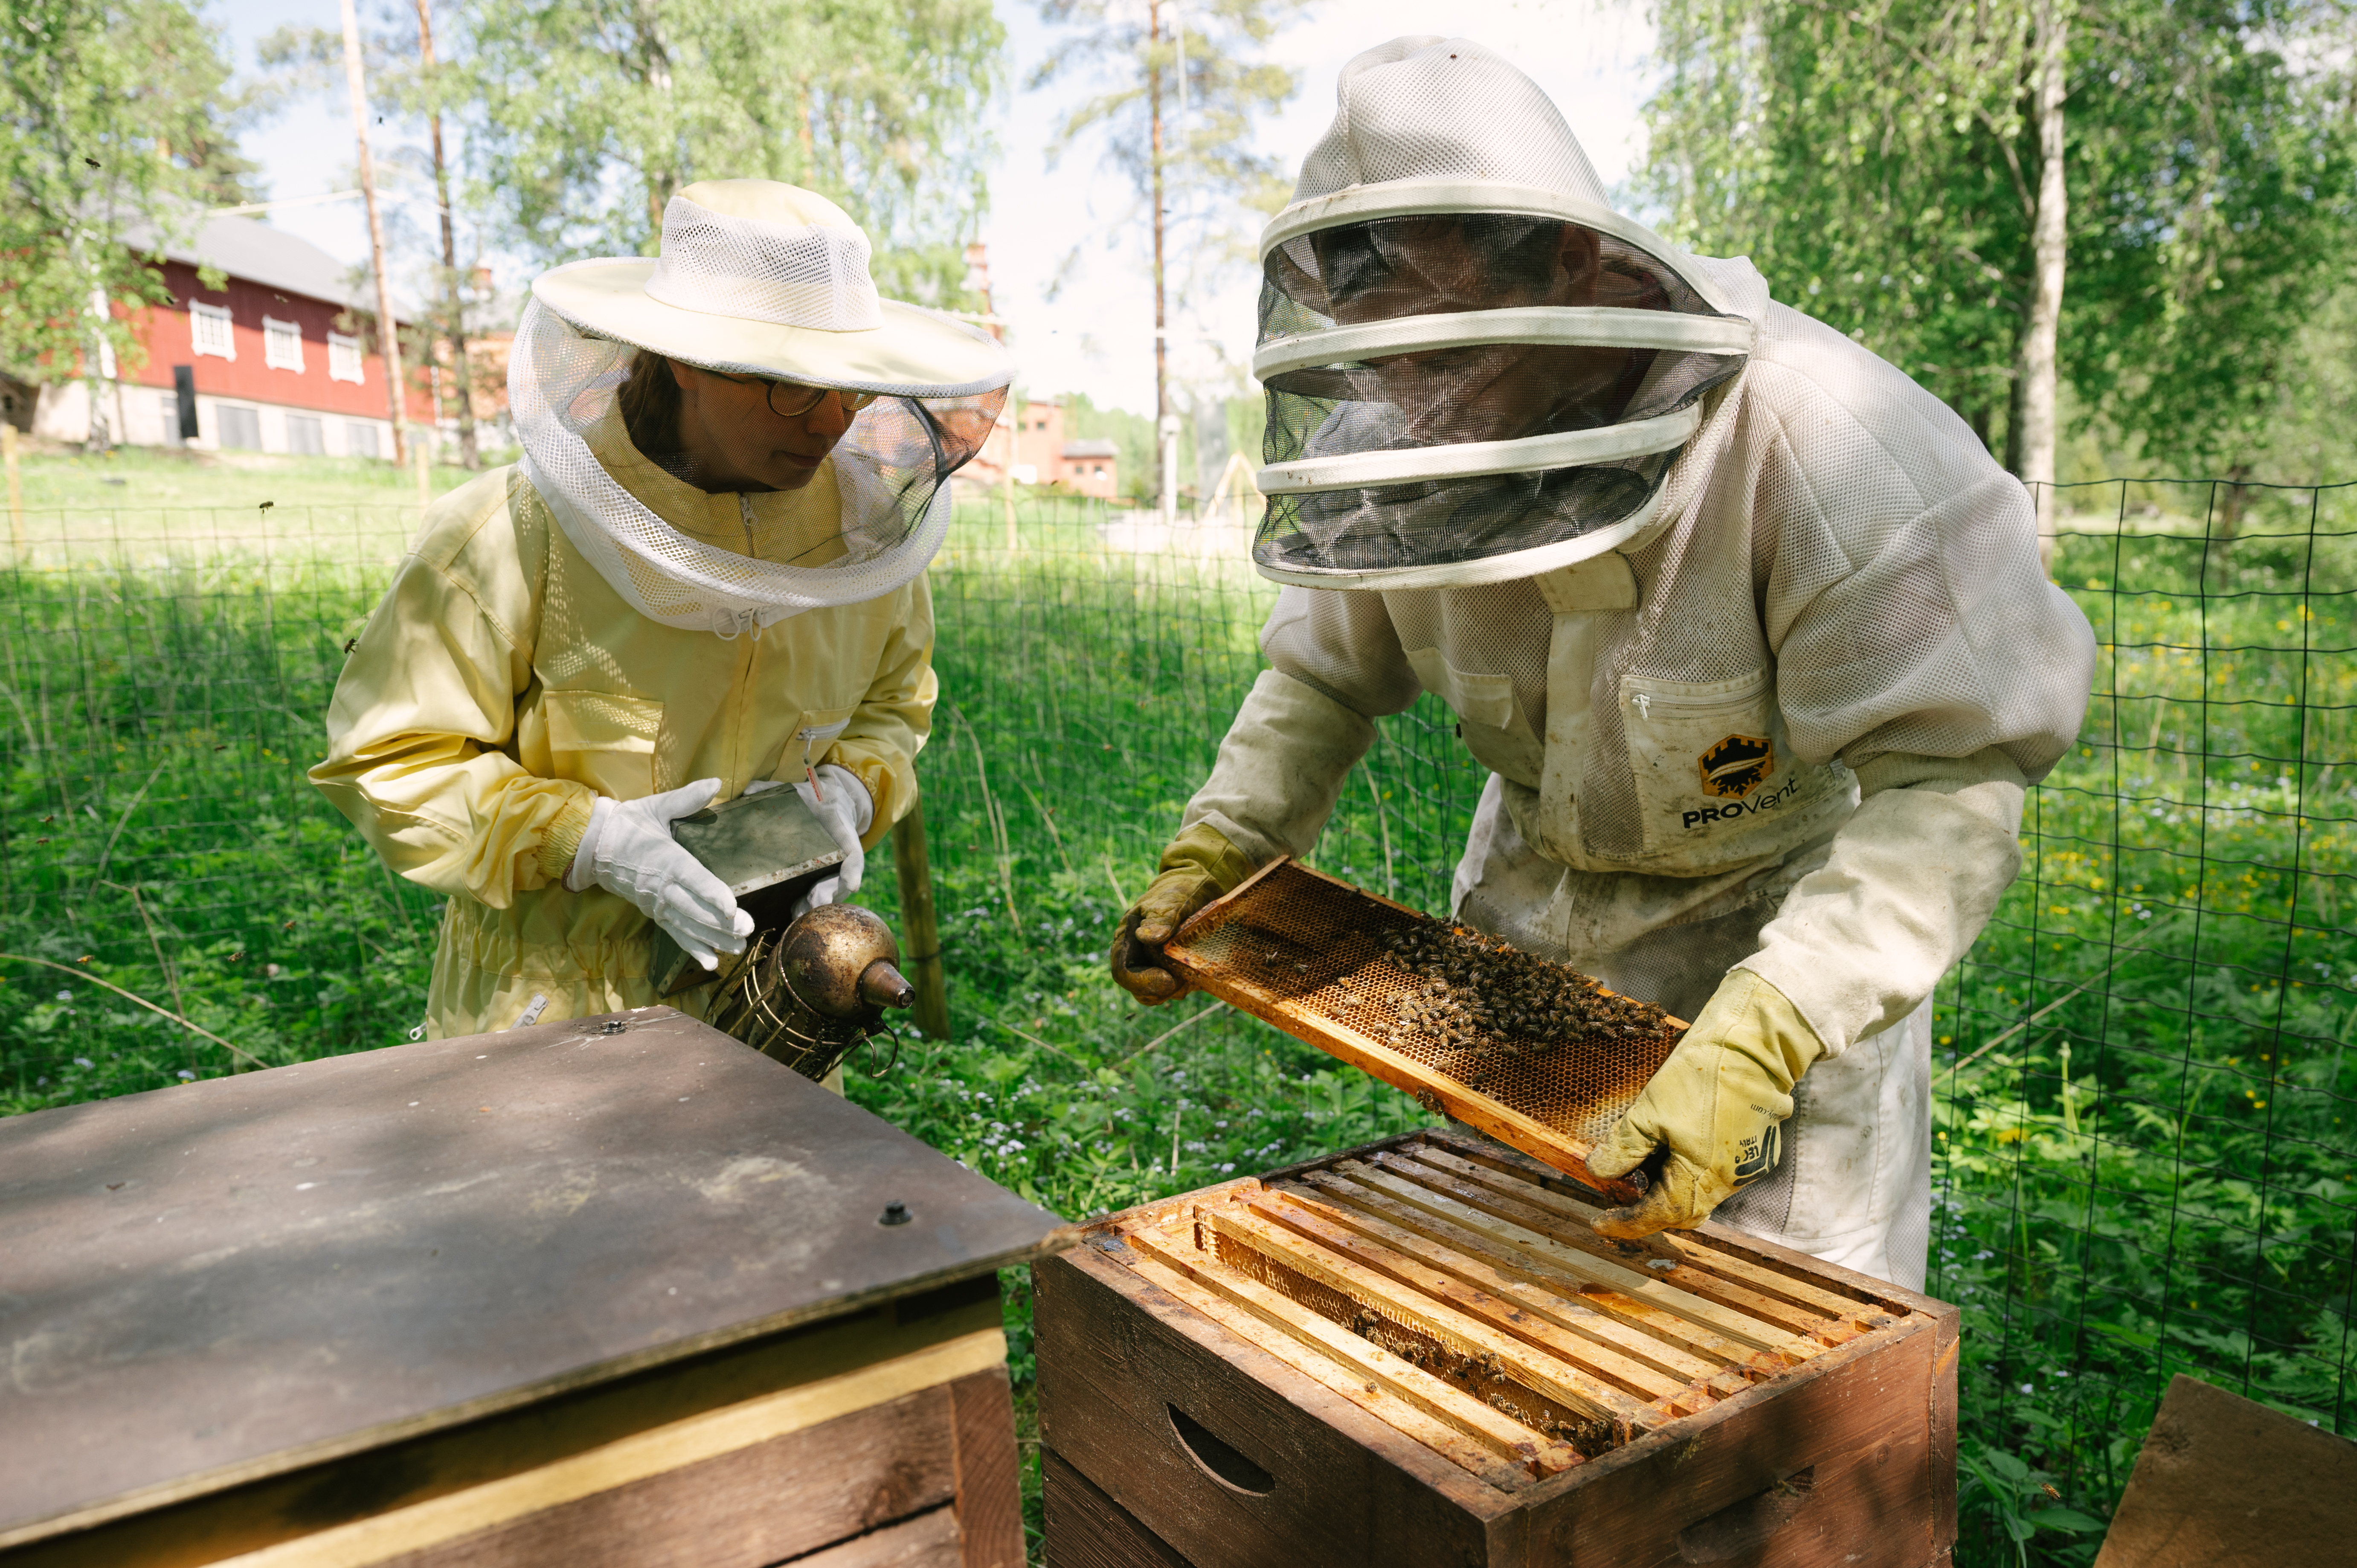 Kuvassa vasemmalla puutarhuri Elisa Lönnroth hoitamassa Verlan pölyttäjiä mehiläistarhaajan Jurie Schoemanin kanssa. Kuva UPM/ Joonas Linkola